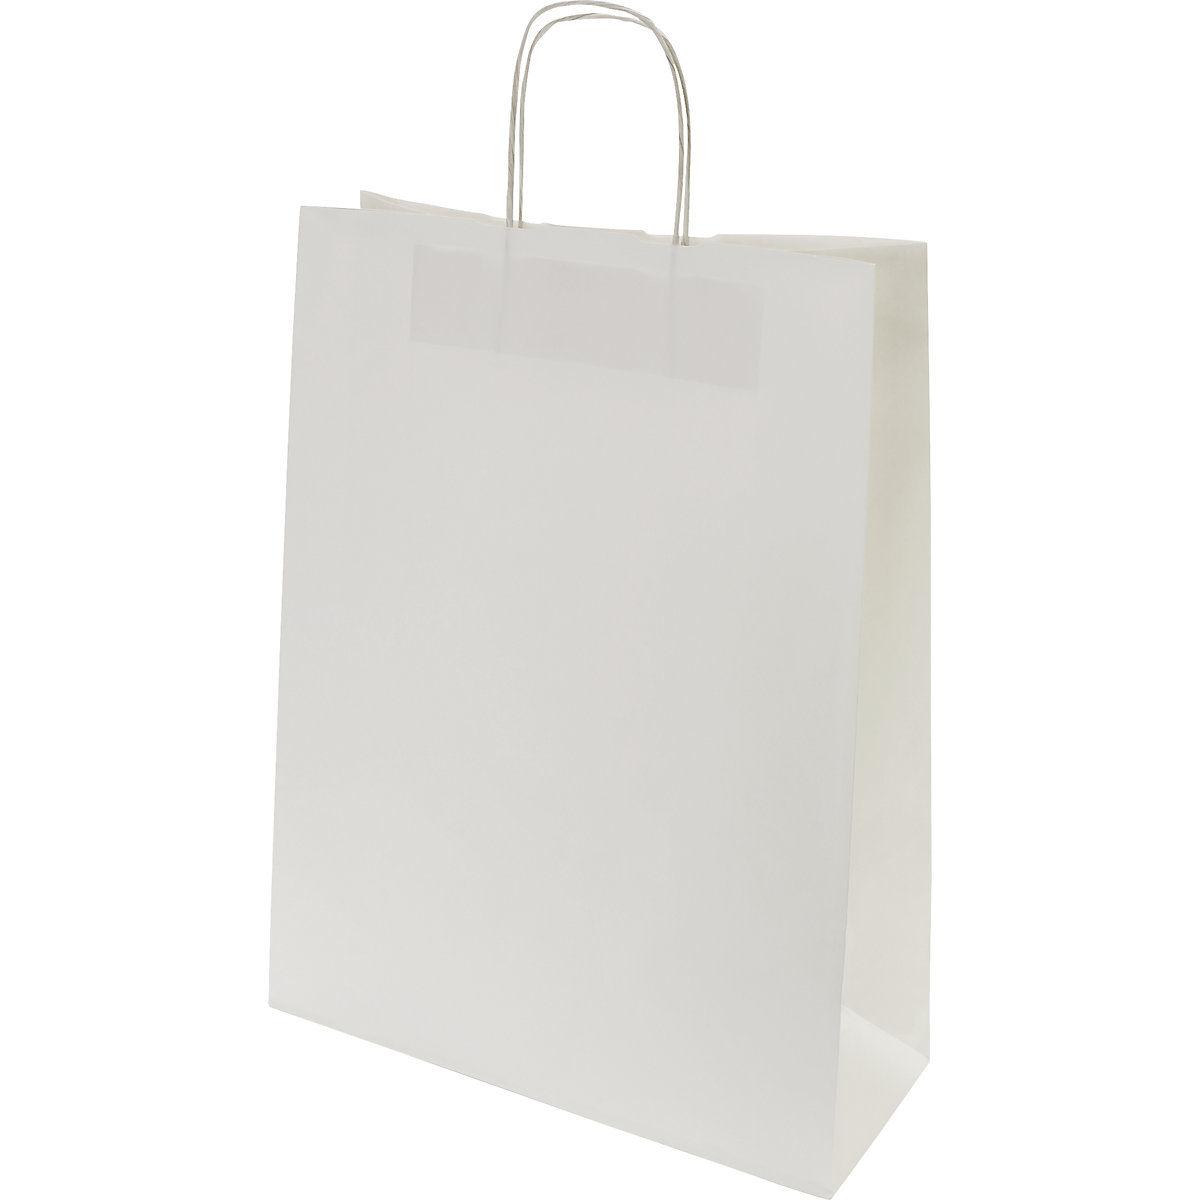 Papiertragetasche FRESH, weiß, LxBxH 425 x 320 x 130 mm, 100 g/m², VE 250 Stk, ab 10 VE-2